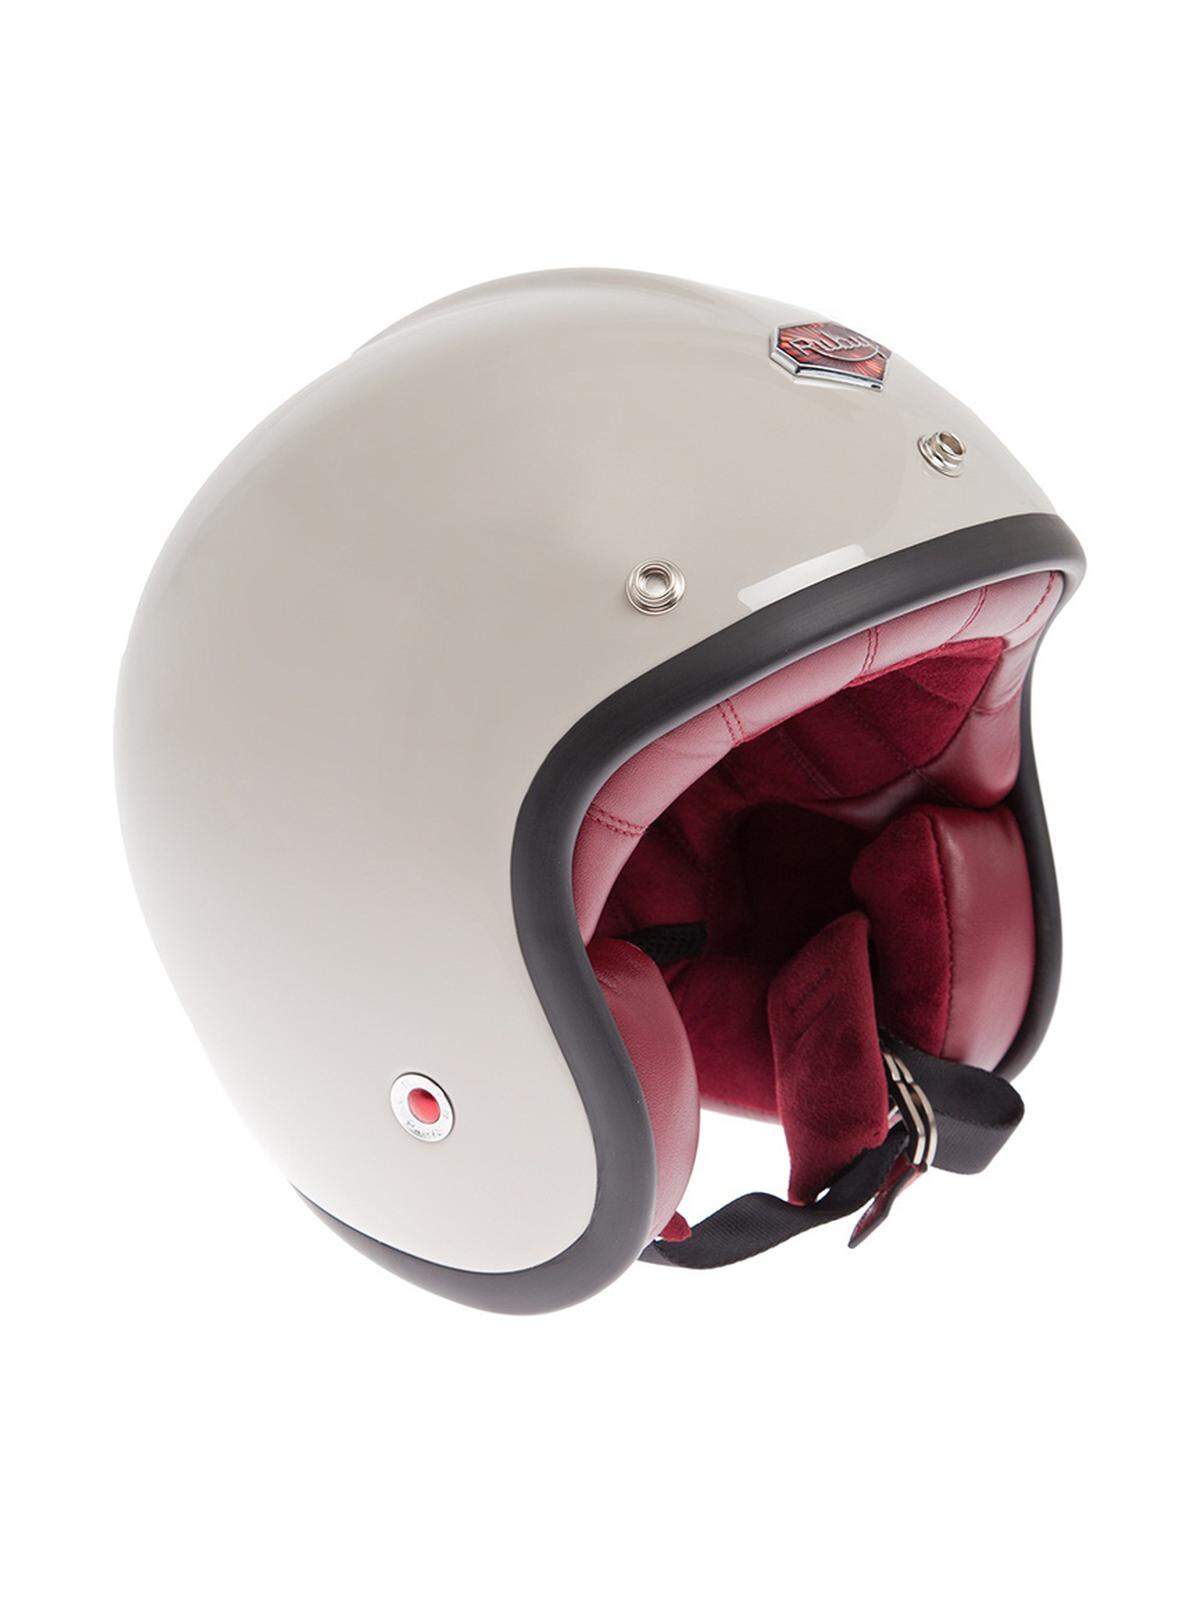 Helm von Ruby, 550 Euro.